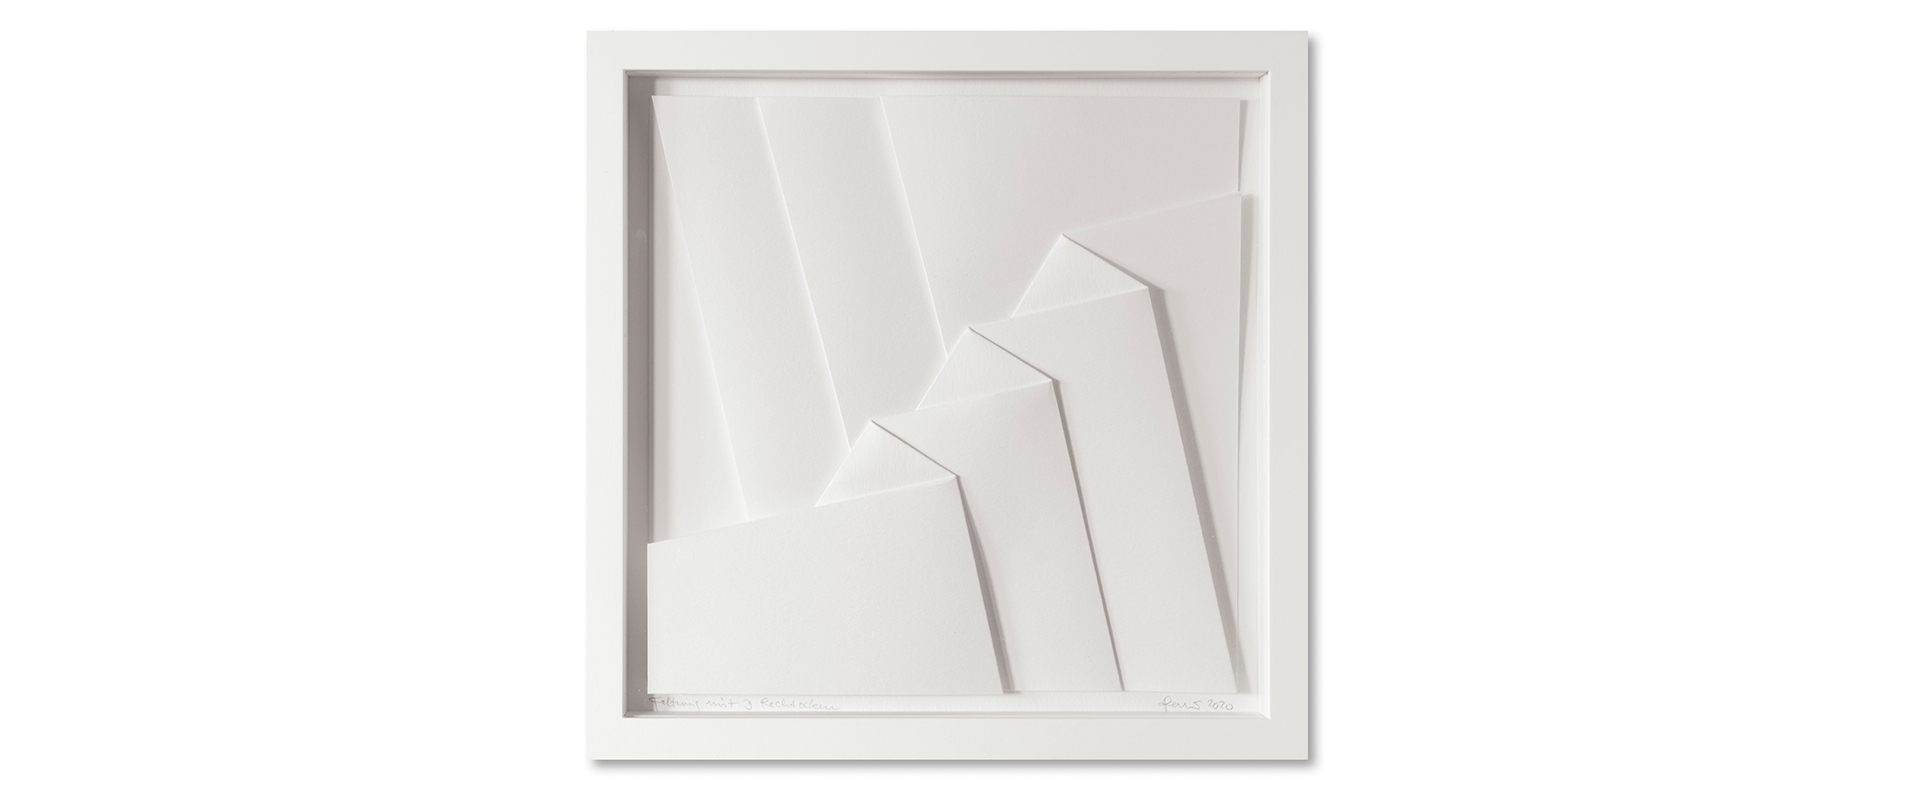 Peter Weber, Faltung mit 3 Rechtecken – 2020, Canson Aquarellkarton, gefaltet, gerahmt, 30 x 30 cm